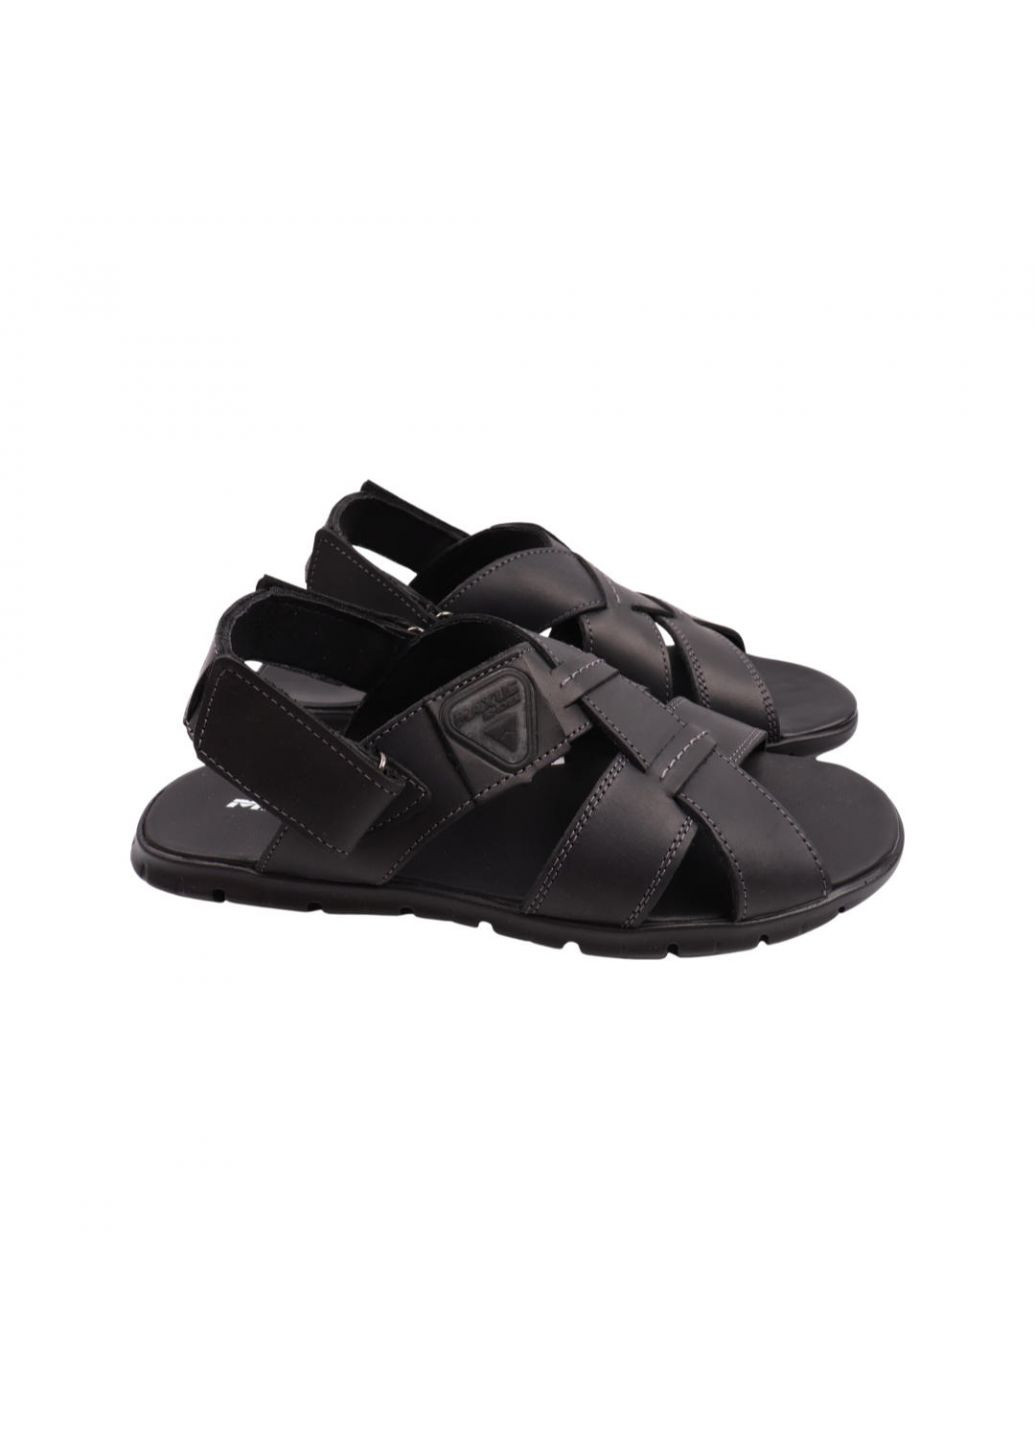 Сандалі чоловічі чорні натуральна шкіра Maxus Shoes 106-22lbc (257444476)